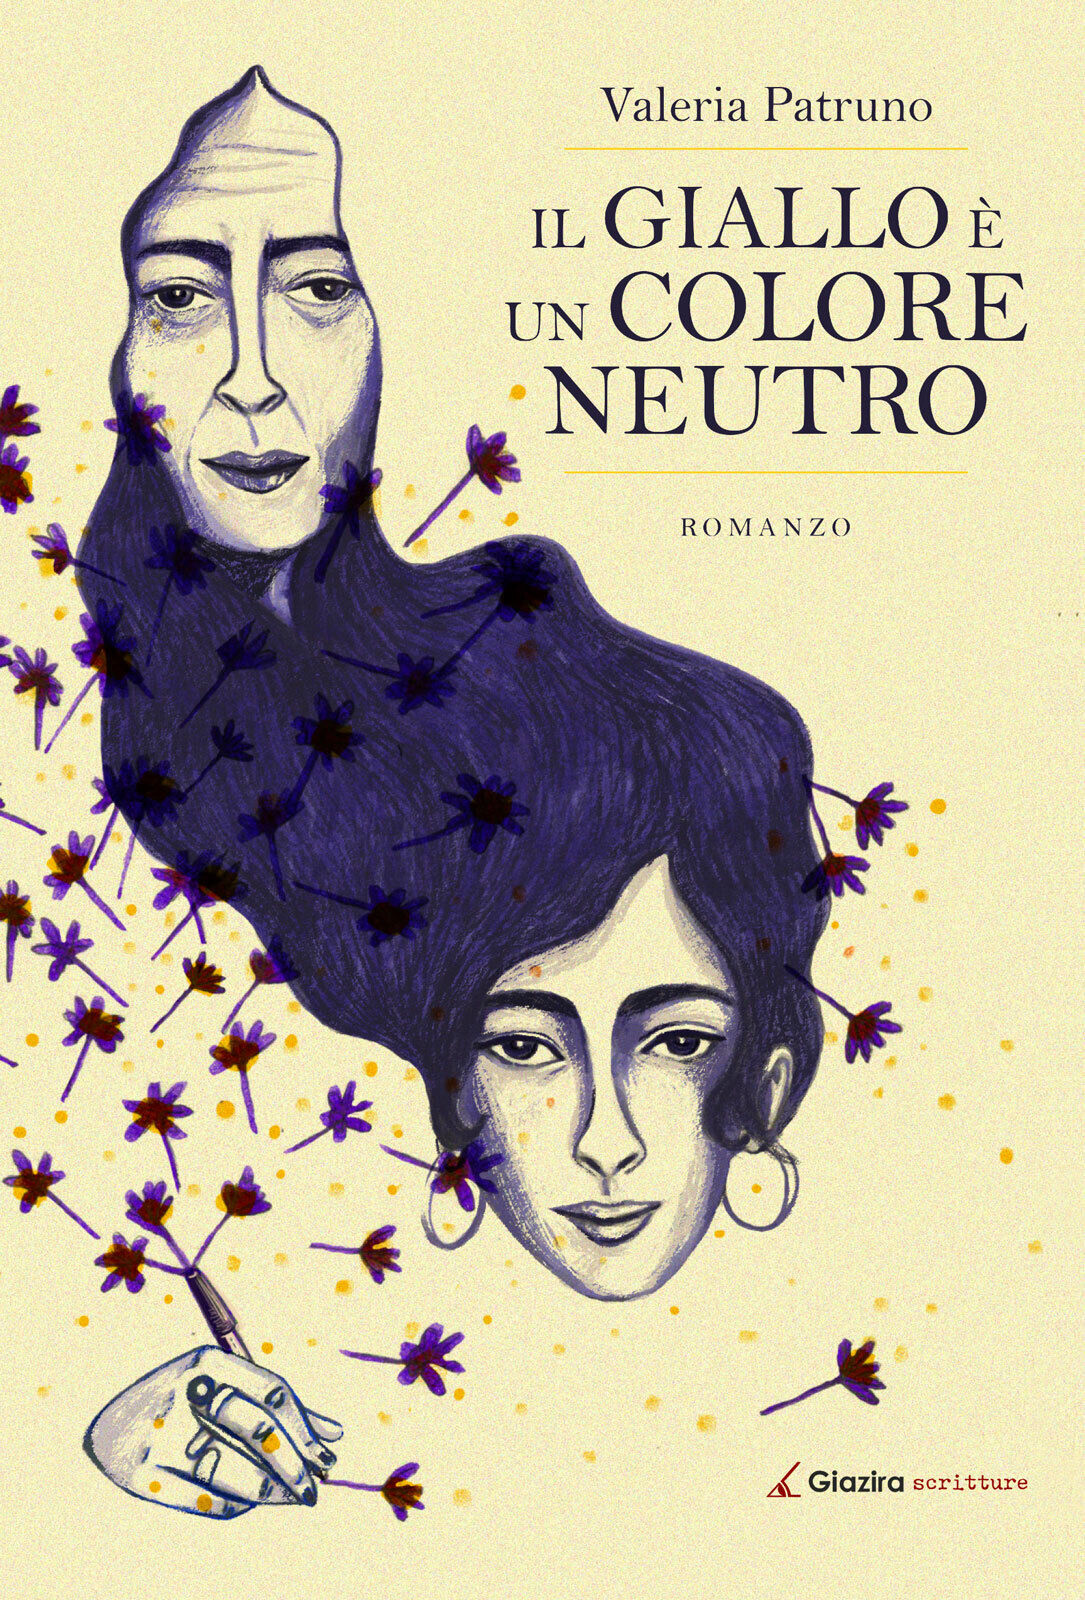 Il giallo ? un colore neutro - Valeria Patruno - Giazira - 2020